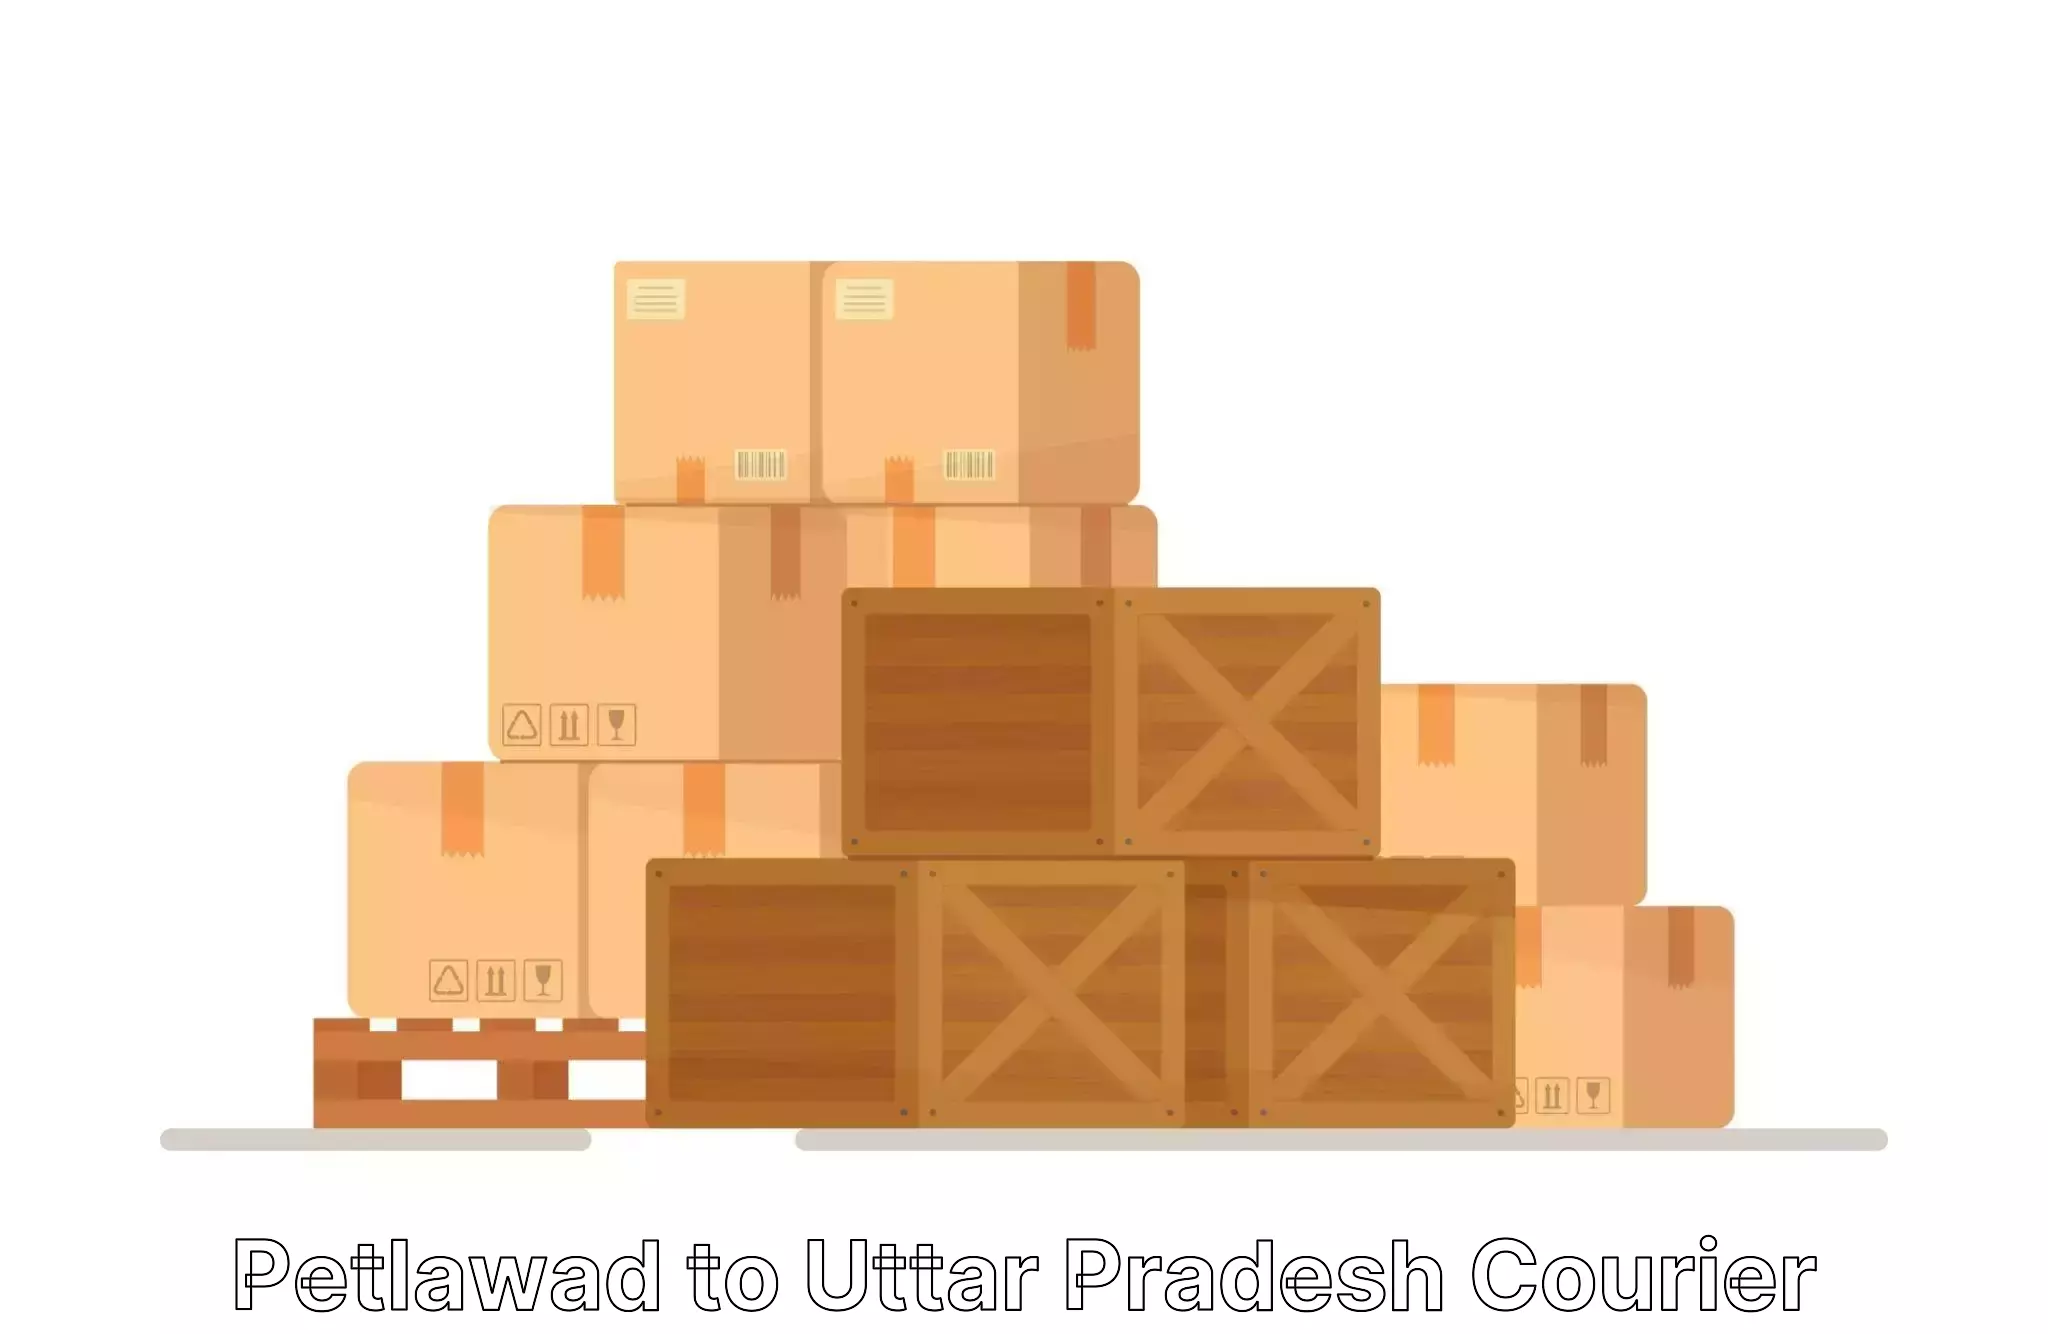 Furniture moving specialists Petlawad to Uttar Pradesh